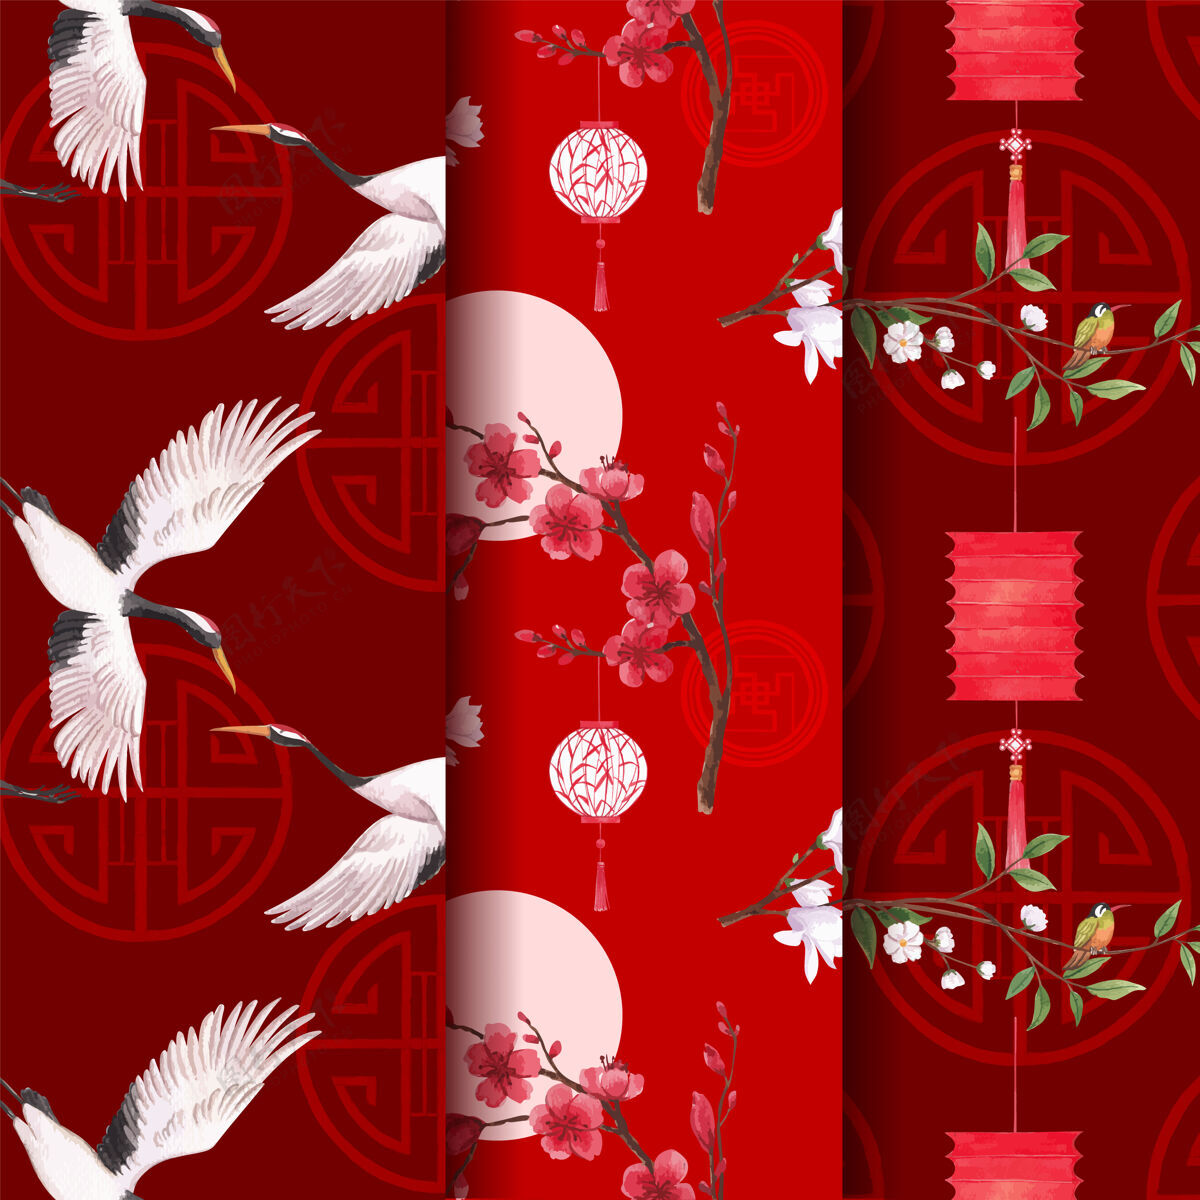 中国新年图案模板与欢乐春节概念设计水彩插画开花中国市场营销